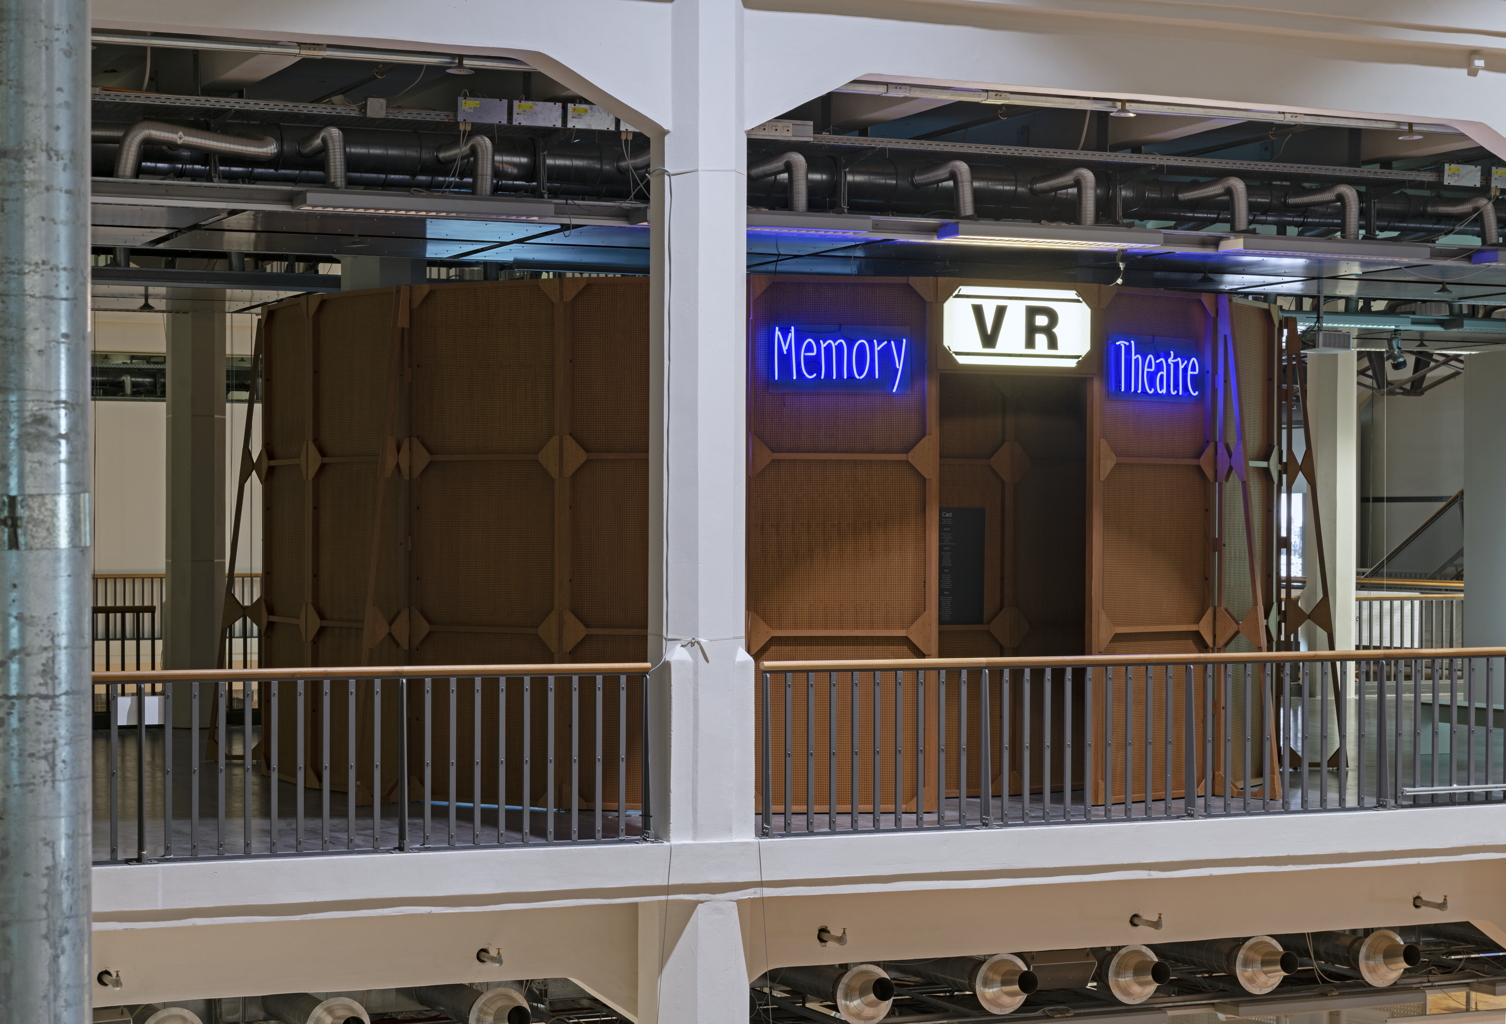 Werk - Memory Theater VR - ZKM000163631.jpg